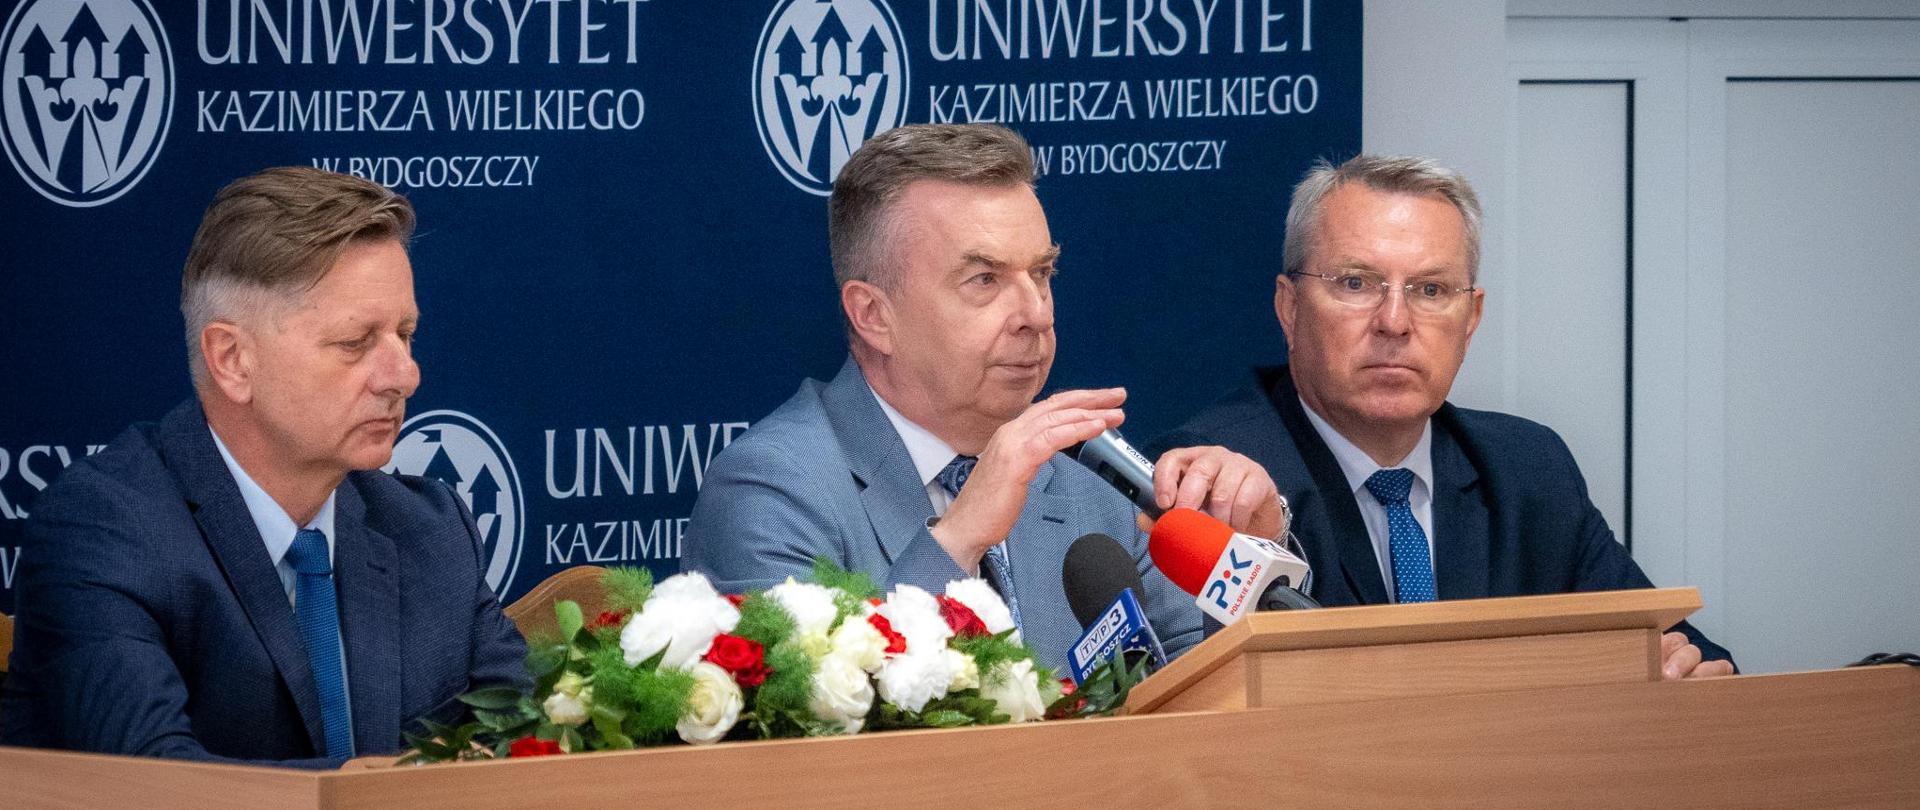 Minister Wieczorek siedzi za stołem, mówi do kilku mikrofonów, obok niego siedzi dwóch mężczyzn w garniturach, za nimi granatowa ścianka z napisem Uniwersytet Kazimierza Wielkiego w Bydgoszczy.